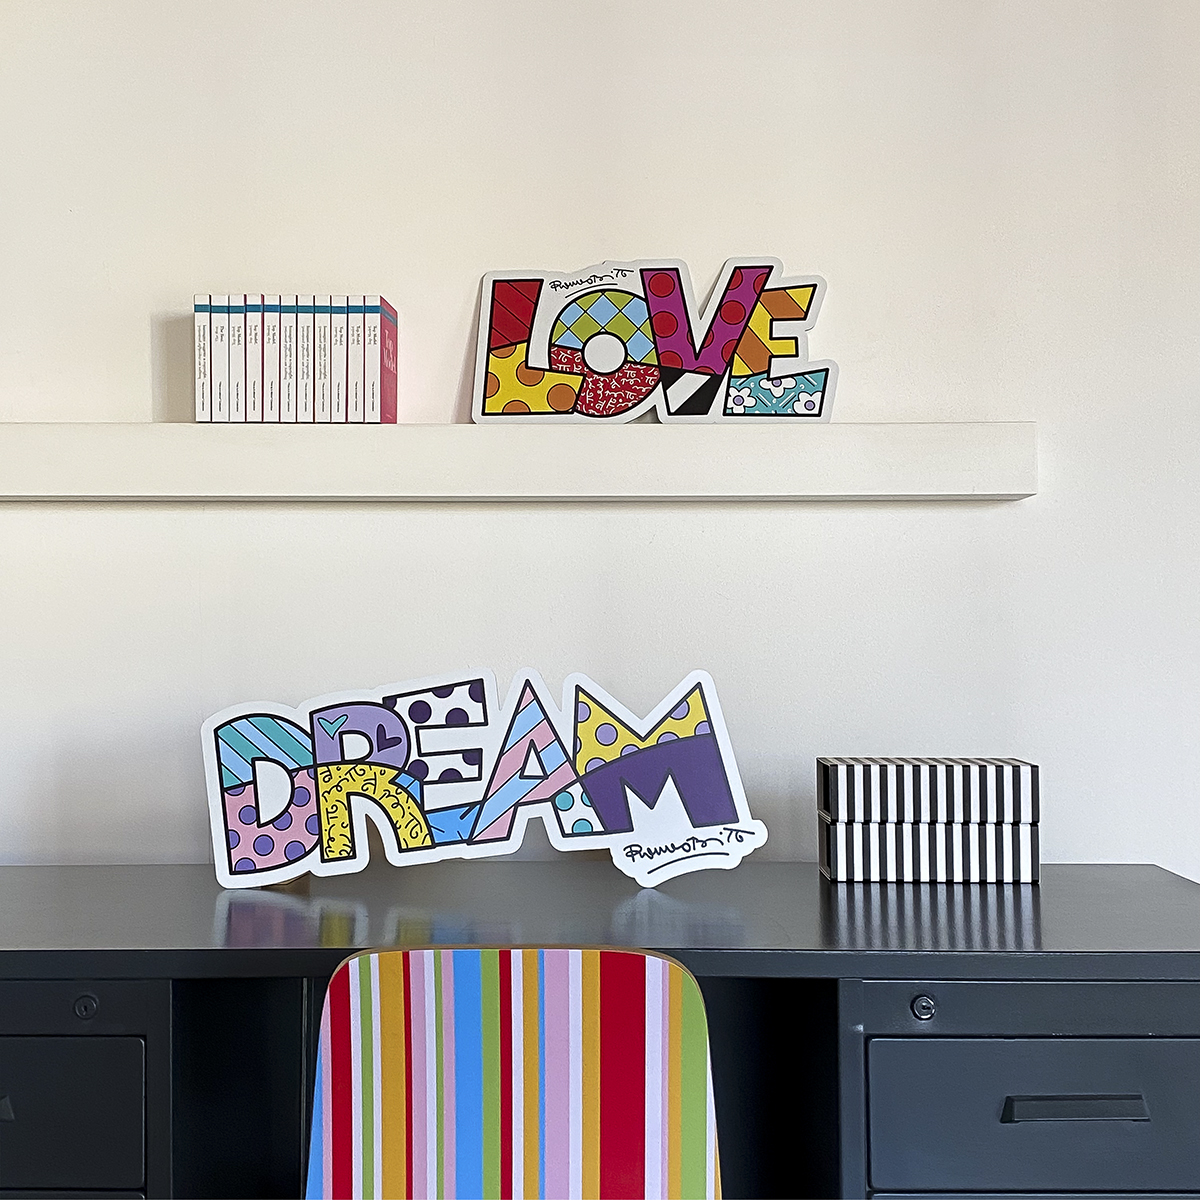 la scritta "love" e "dream" fatte dall'artista brasiliano Romero Britto sono degli elementi decorativi murali da appendere o appoggiare al muro